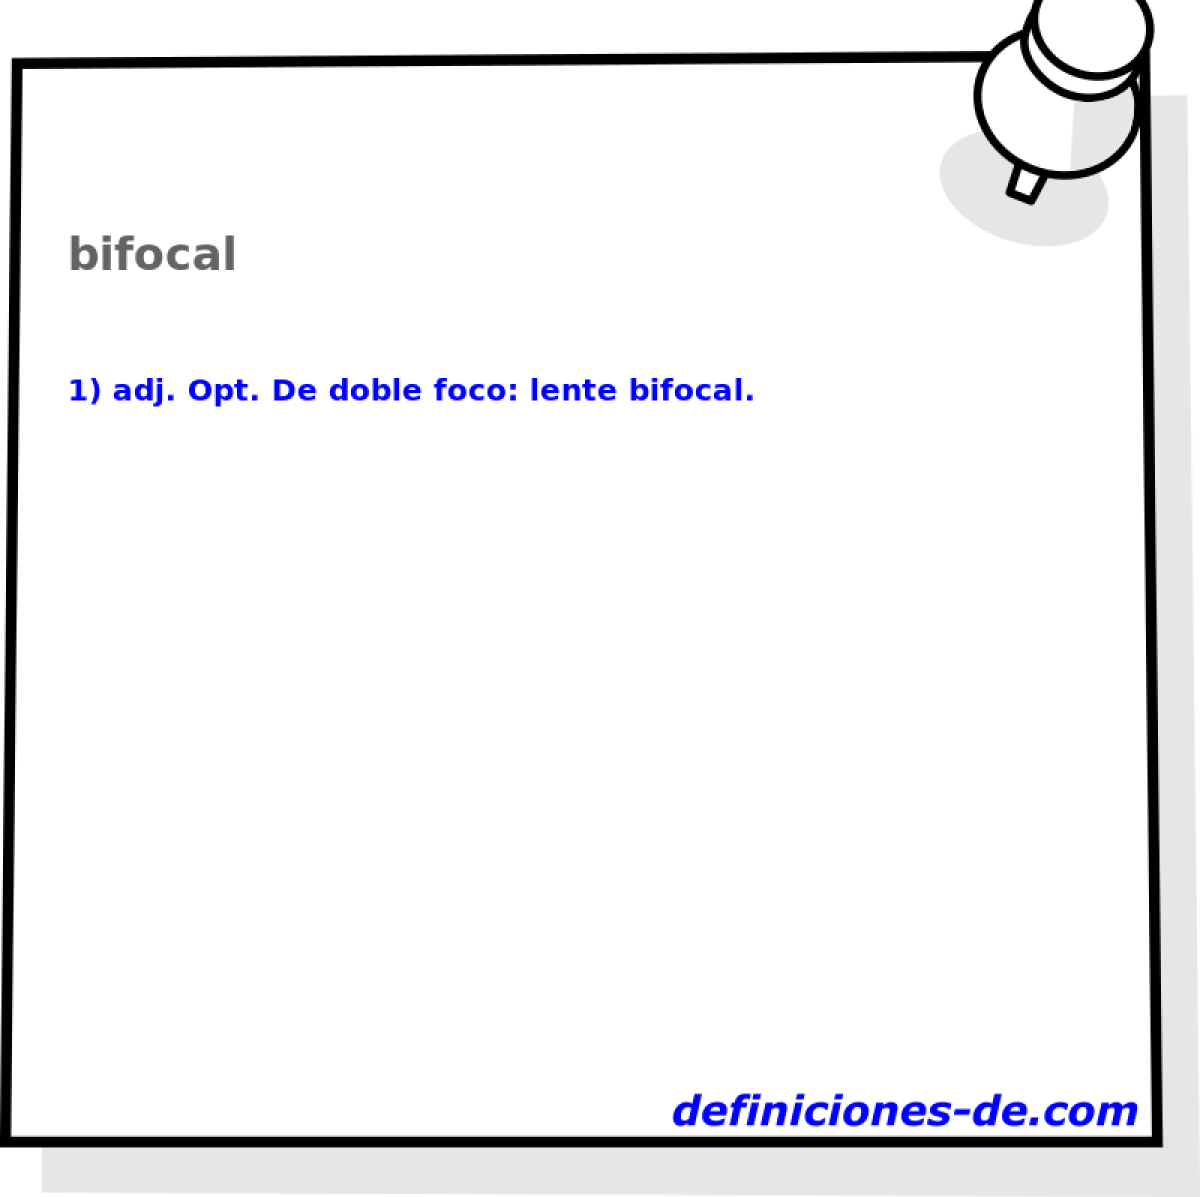 bifocal 